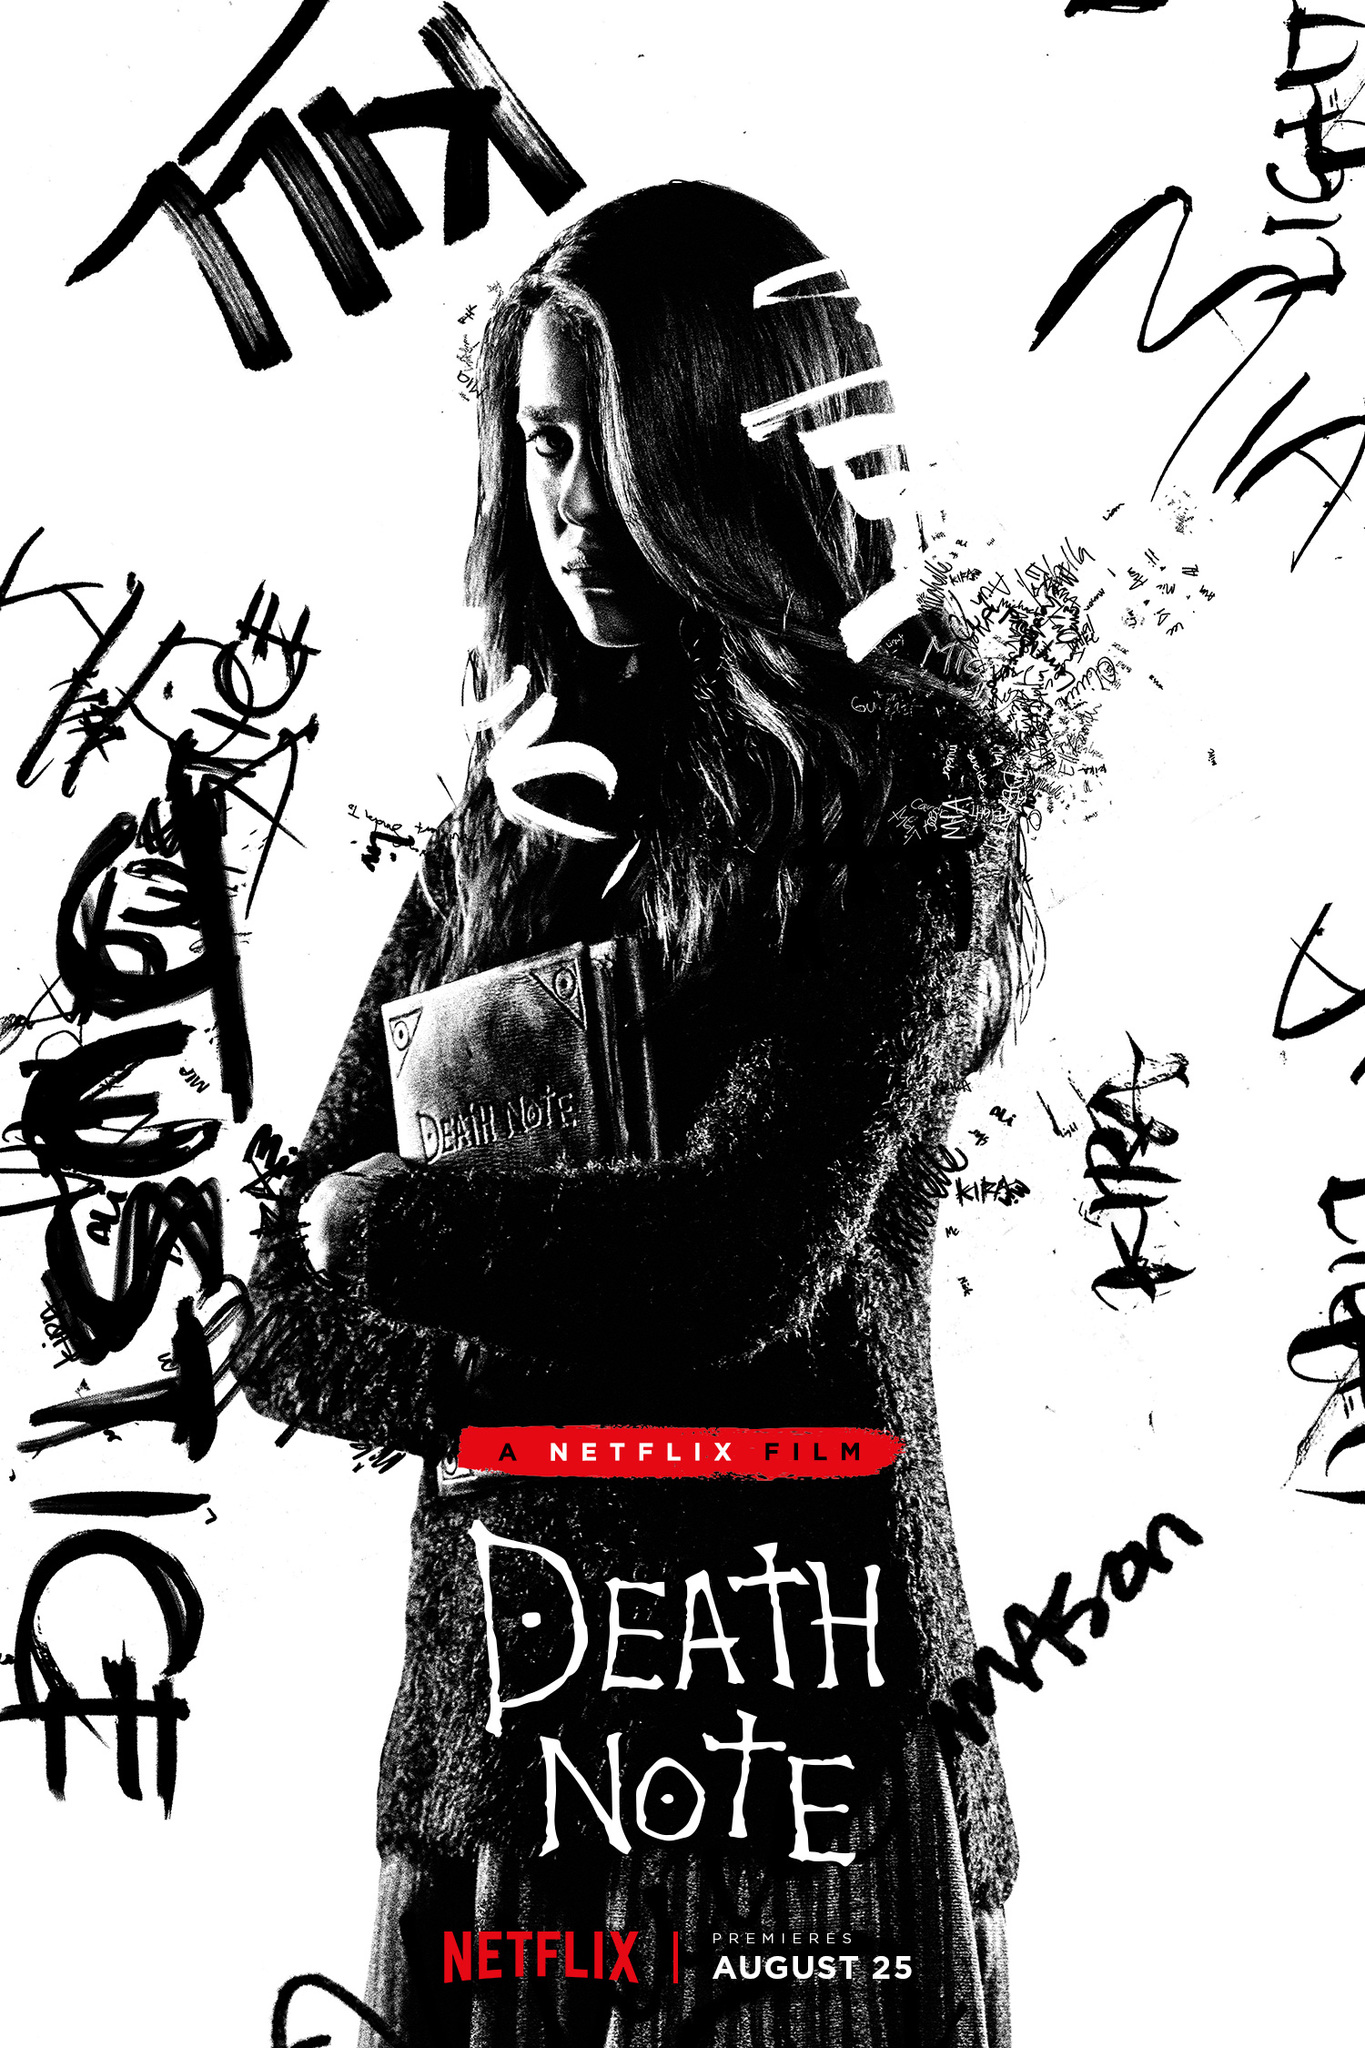 Death Note 2017 Mia - HD Wallpaper 